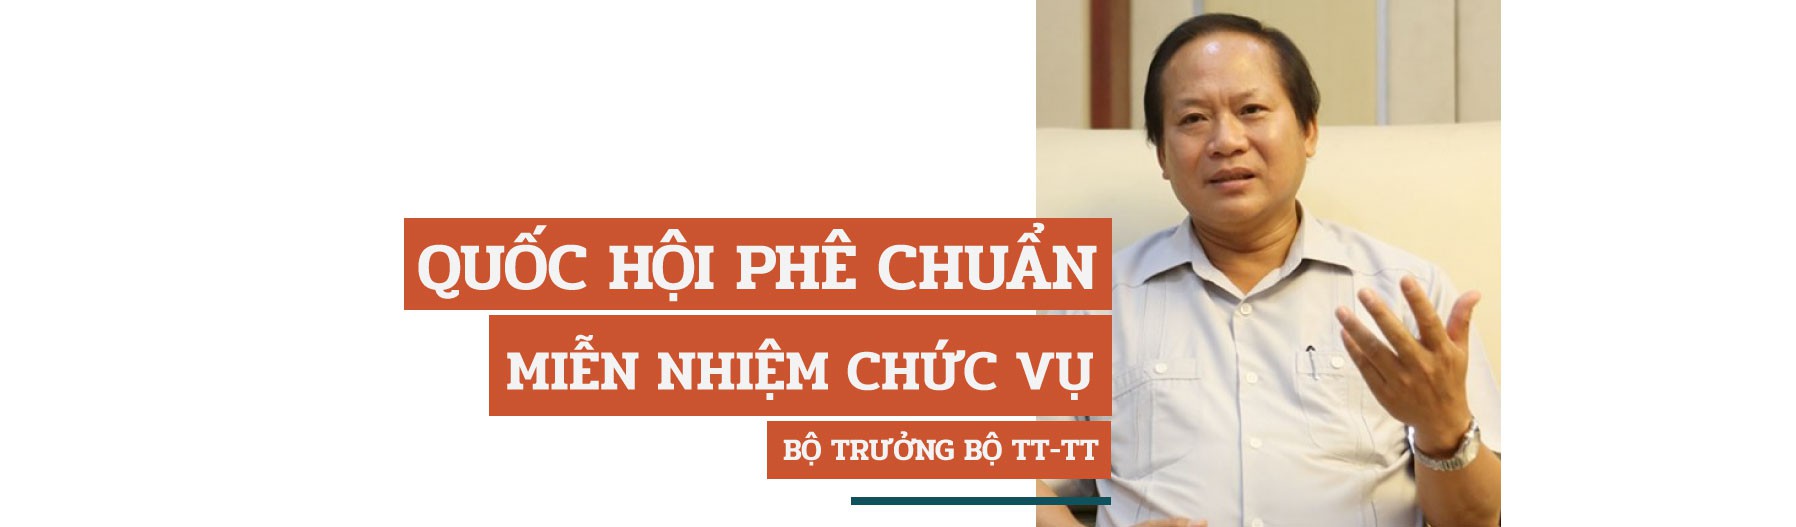 Ông Trương Minh Tuấn và thương vụ Mobifone mua cổ phần AVG - 5